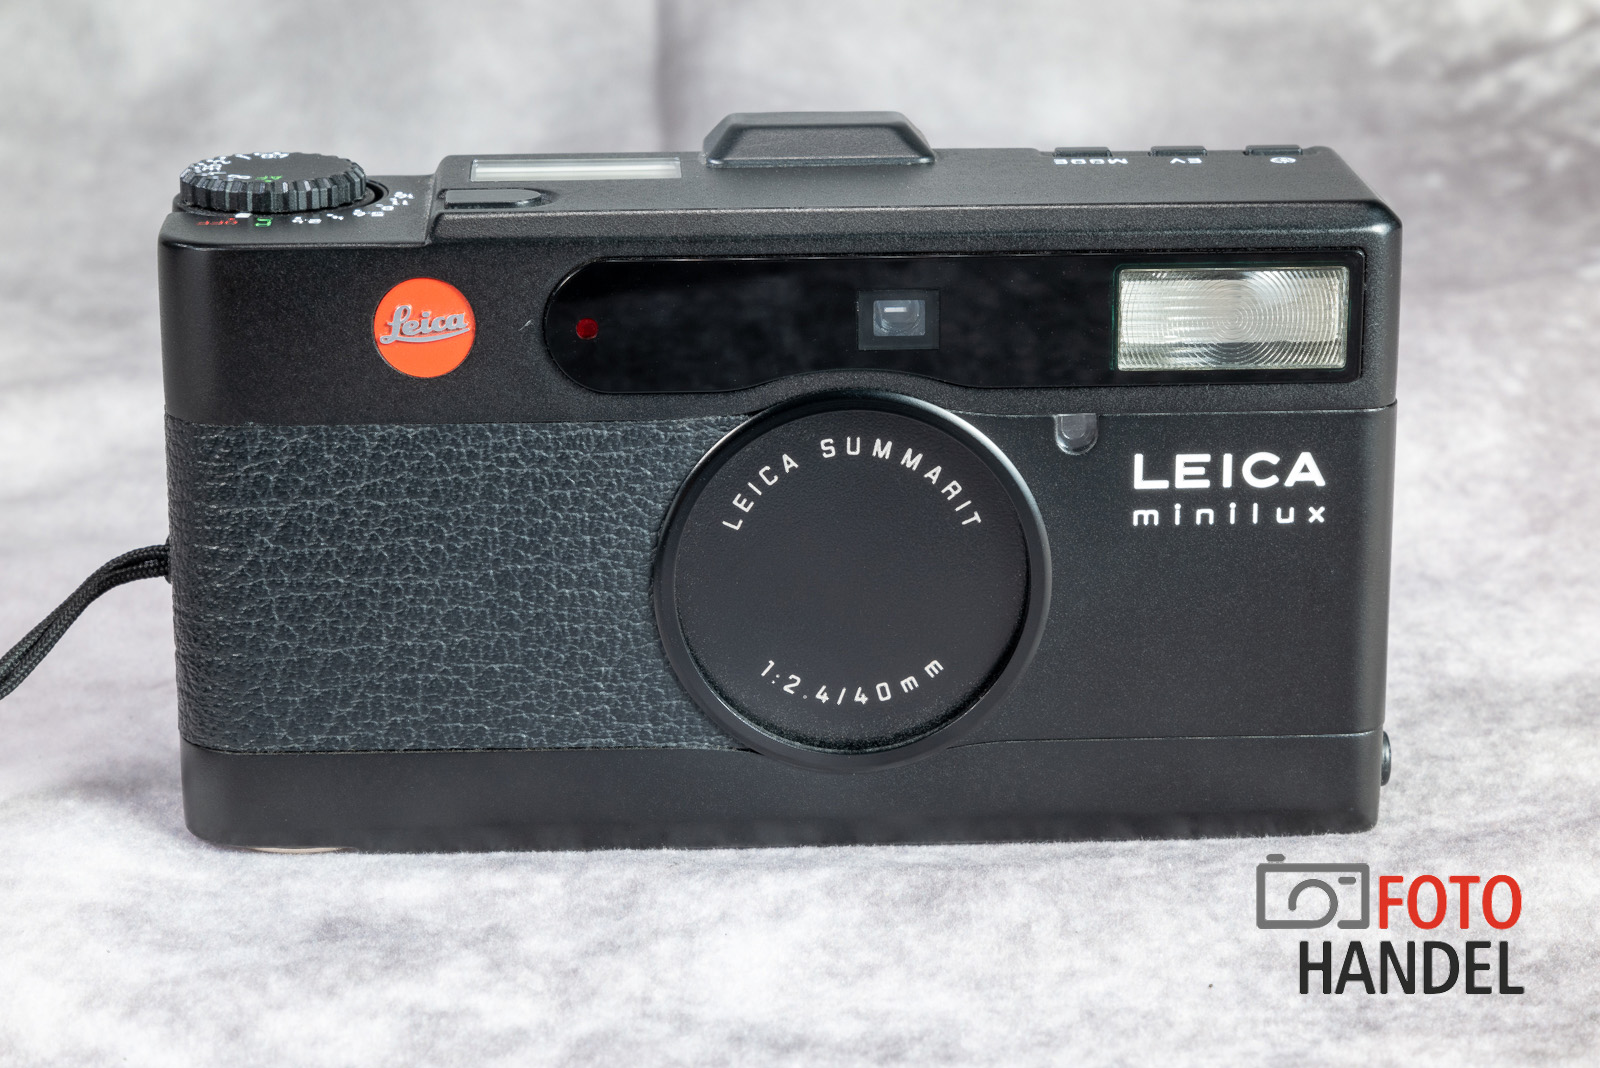 Leica Minilux black mit Summarit 40mm 2.4